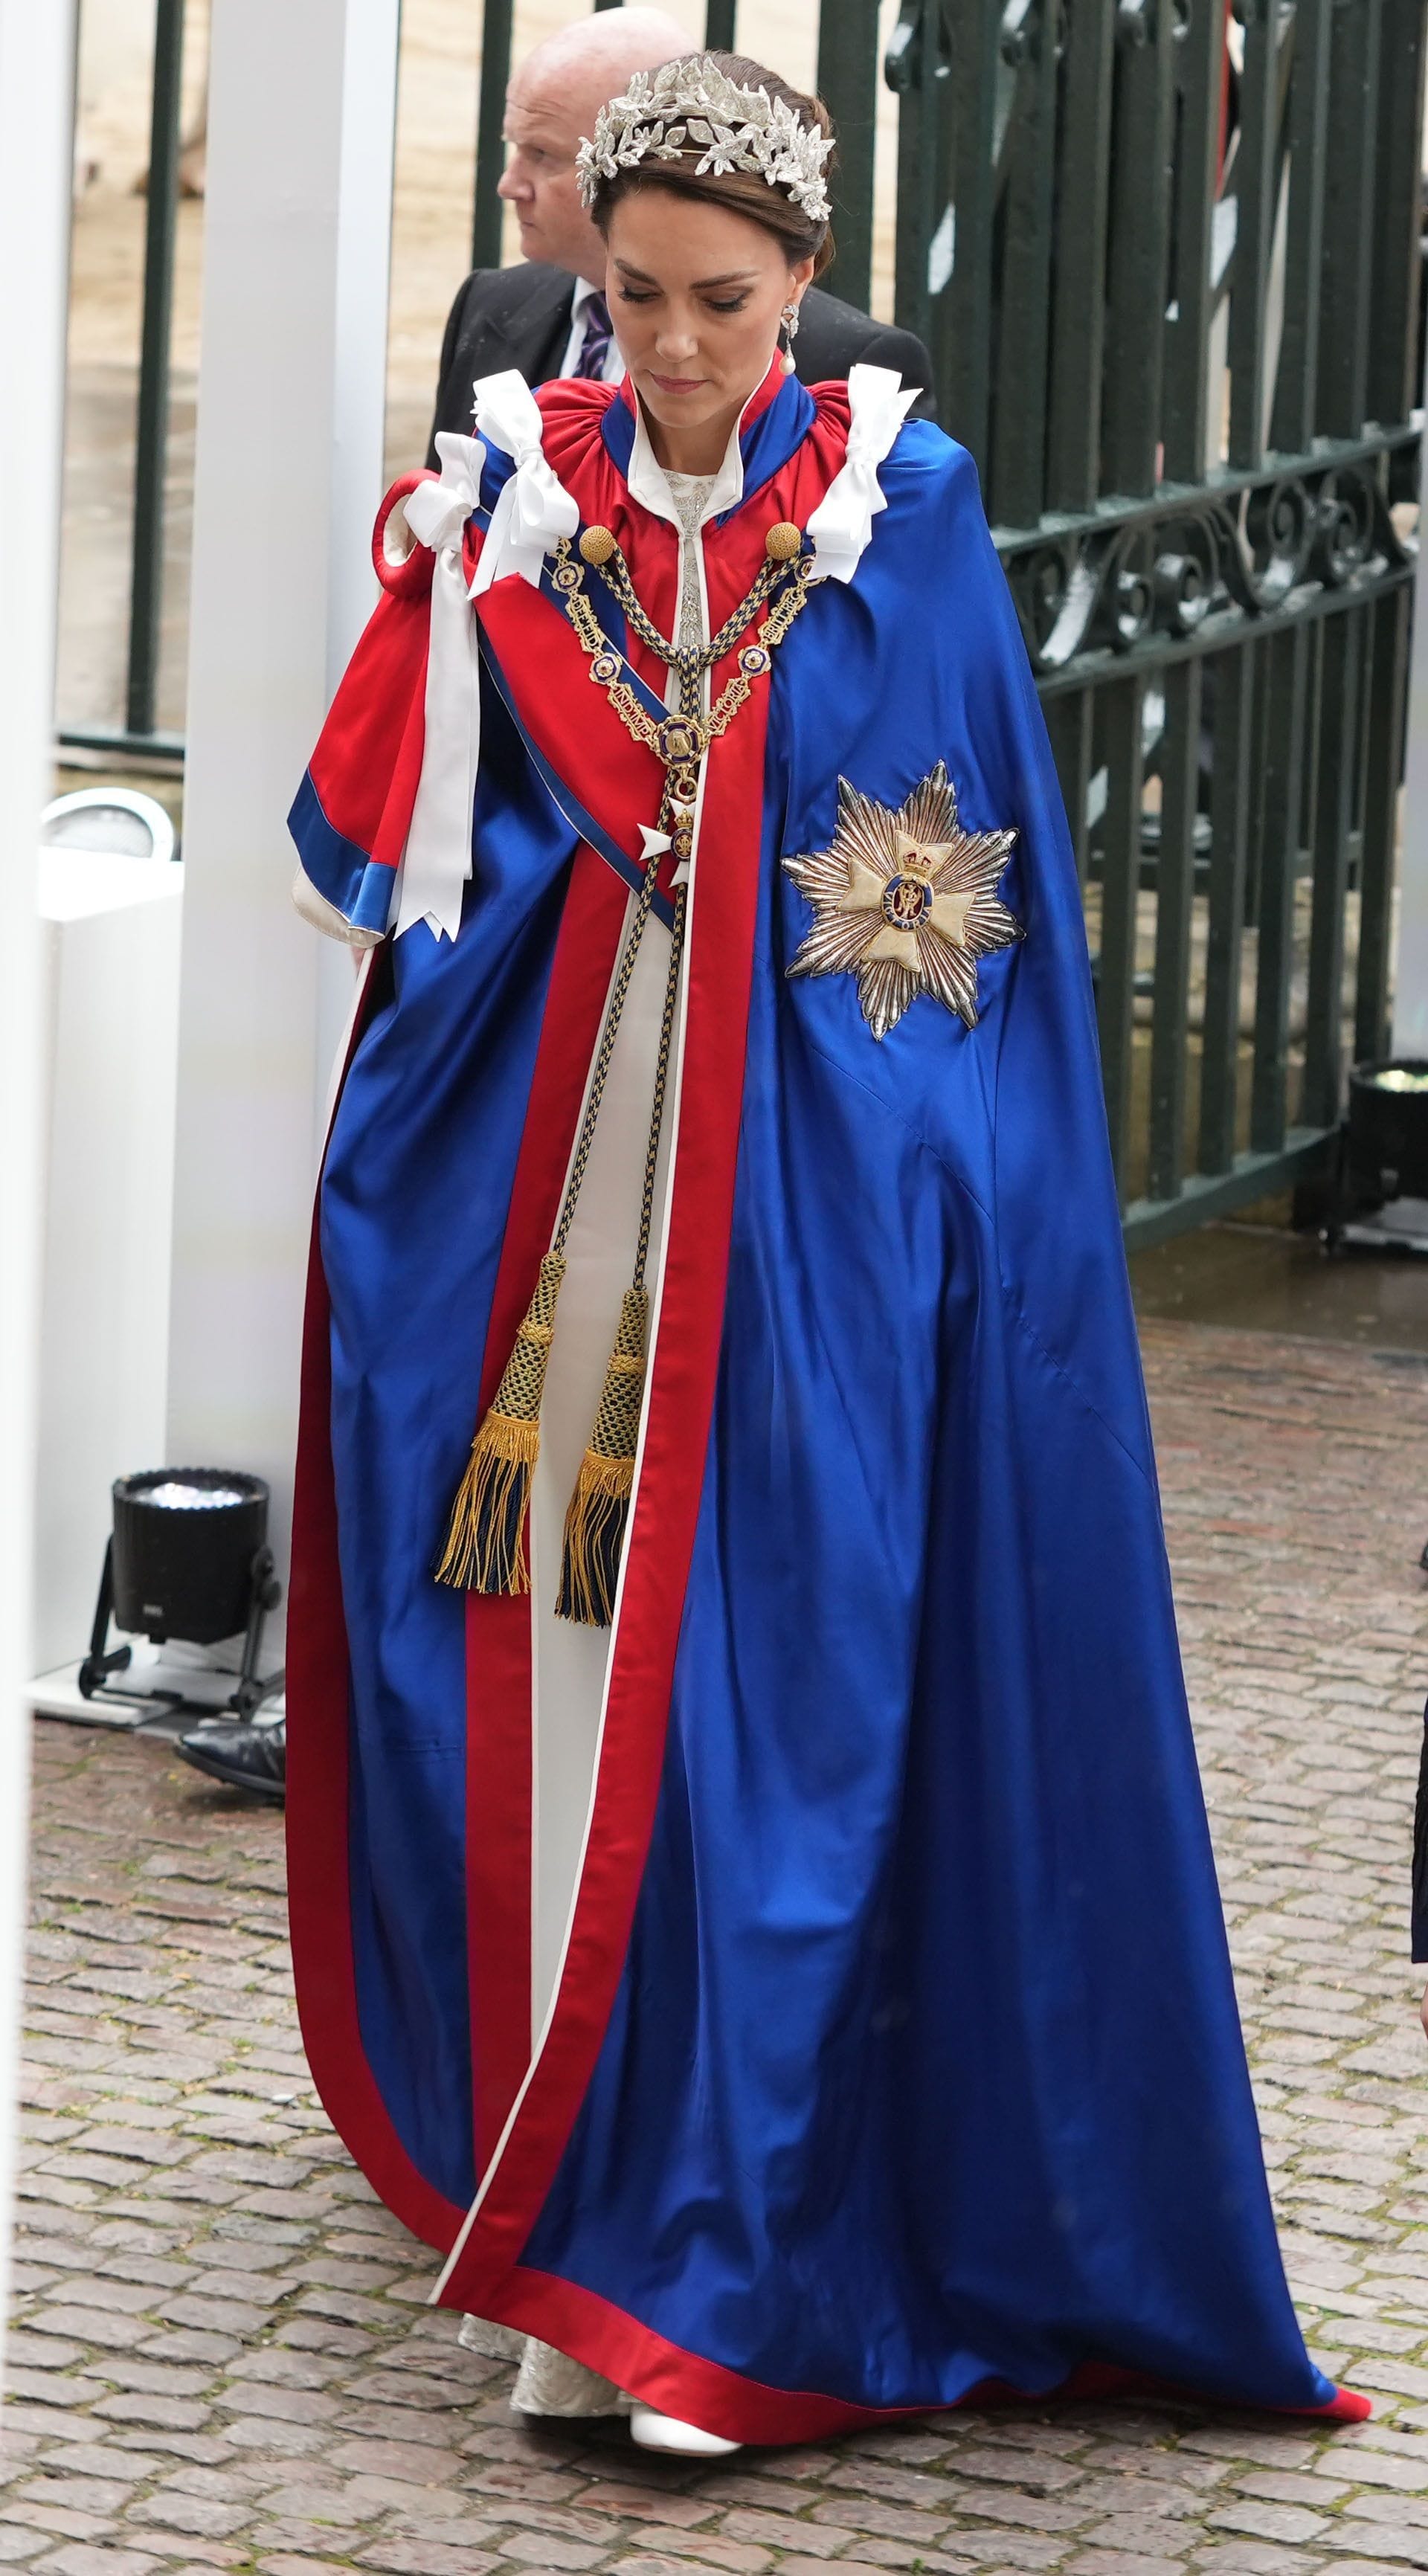 Prinzessin Kate trägt unter ihrem Gewand ein Kleid von Alexander McQueen.